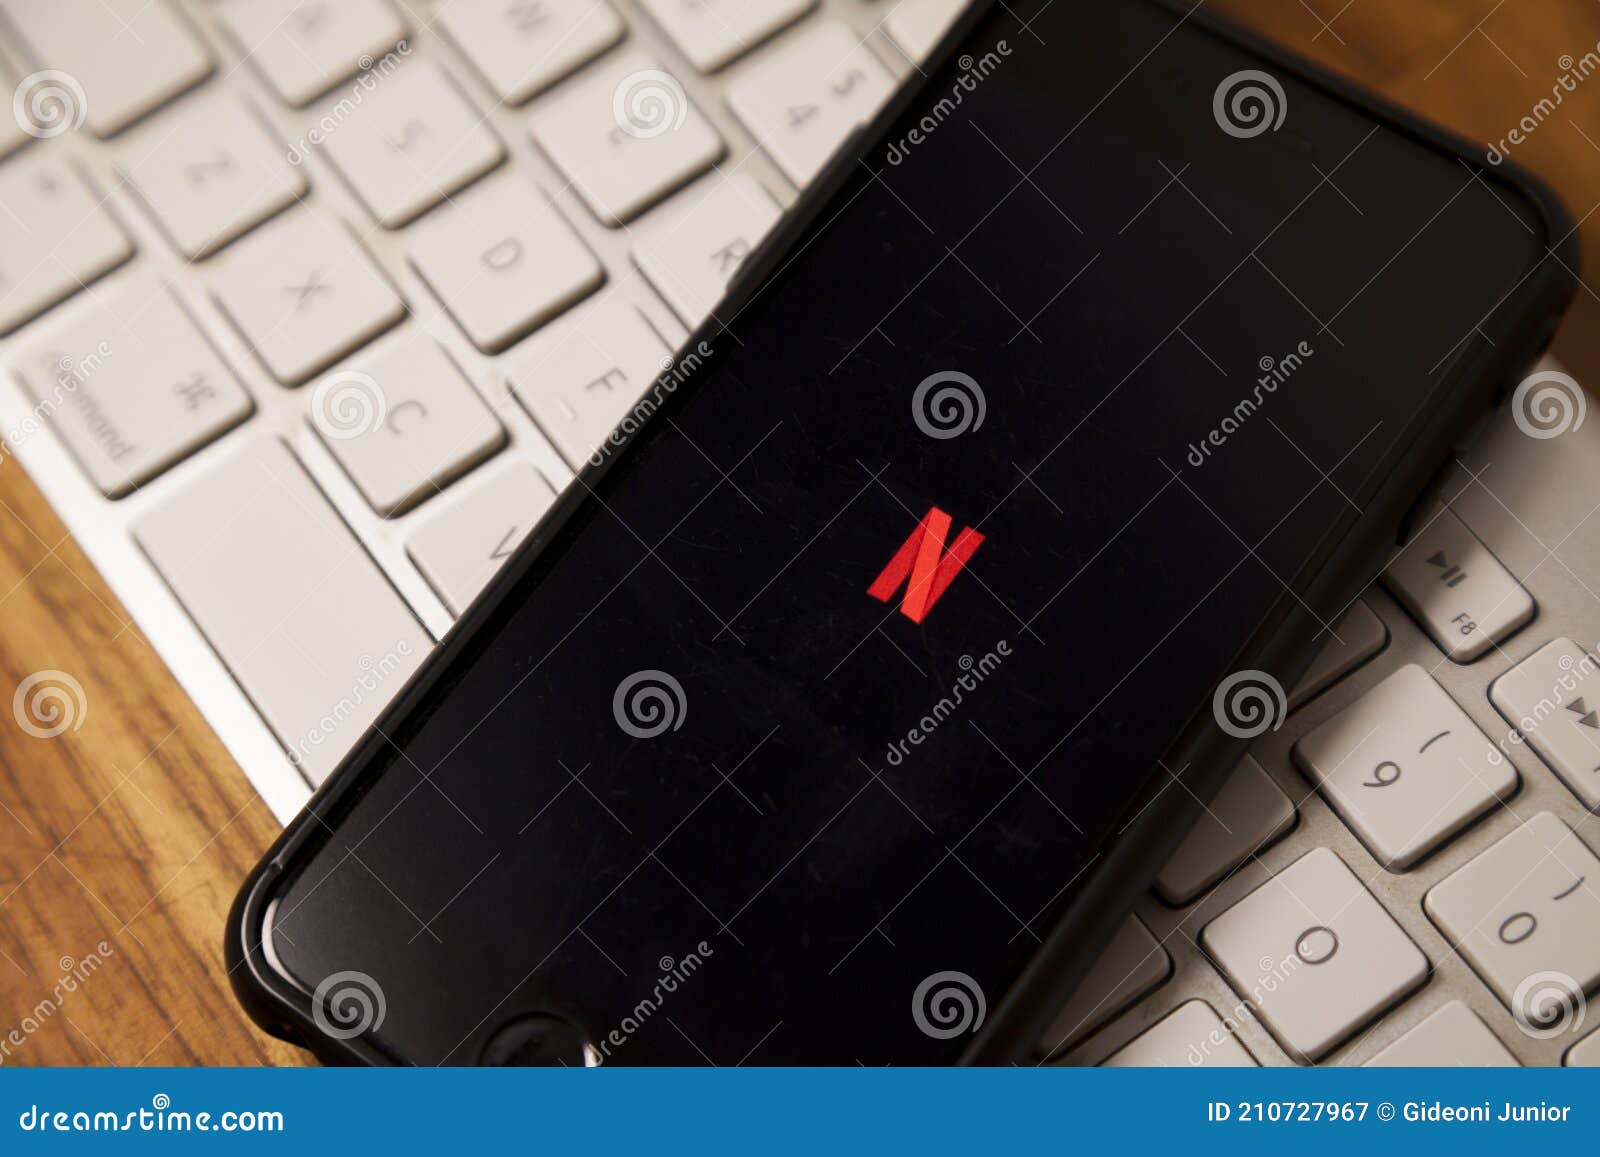 Plataforma Líder No Segmento De Streaming De Filmes Netflix Com O